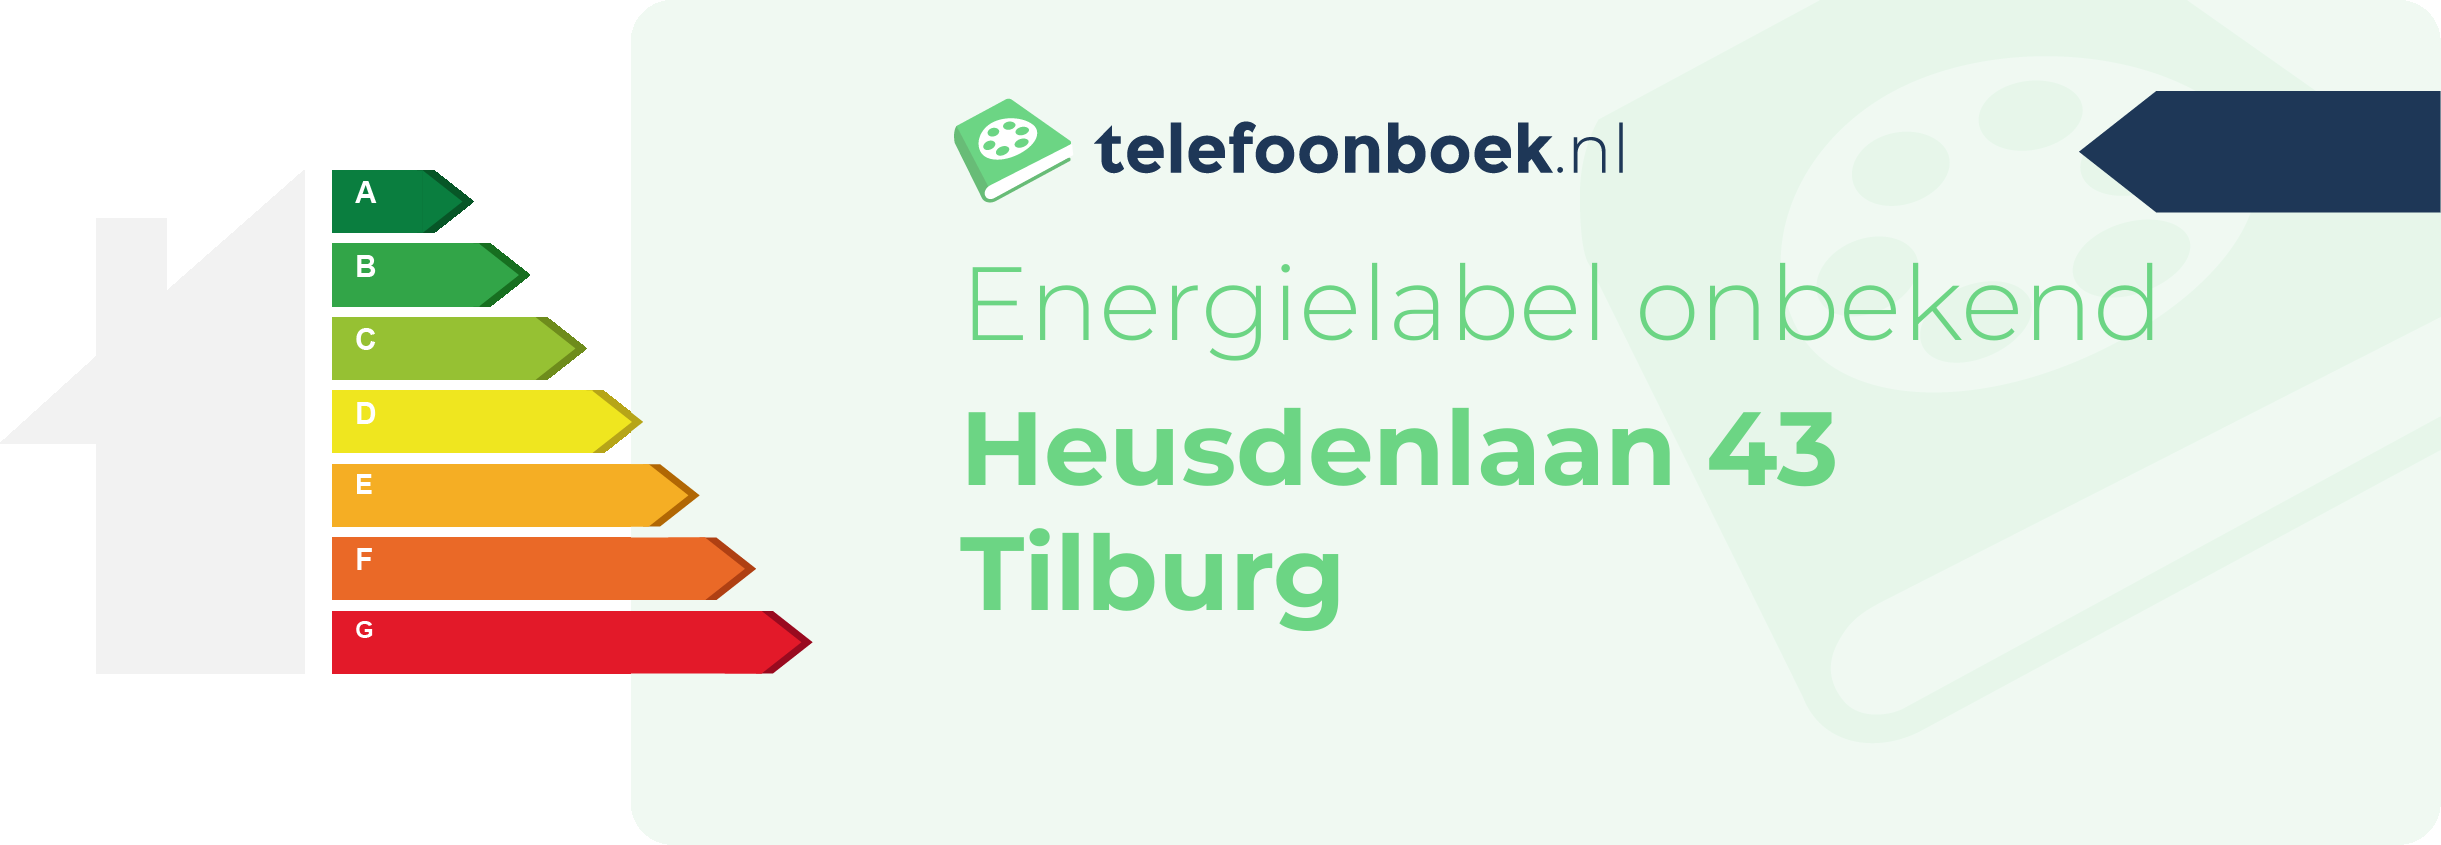 Energielabel Heusdenlaan 43 Tilburg